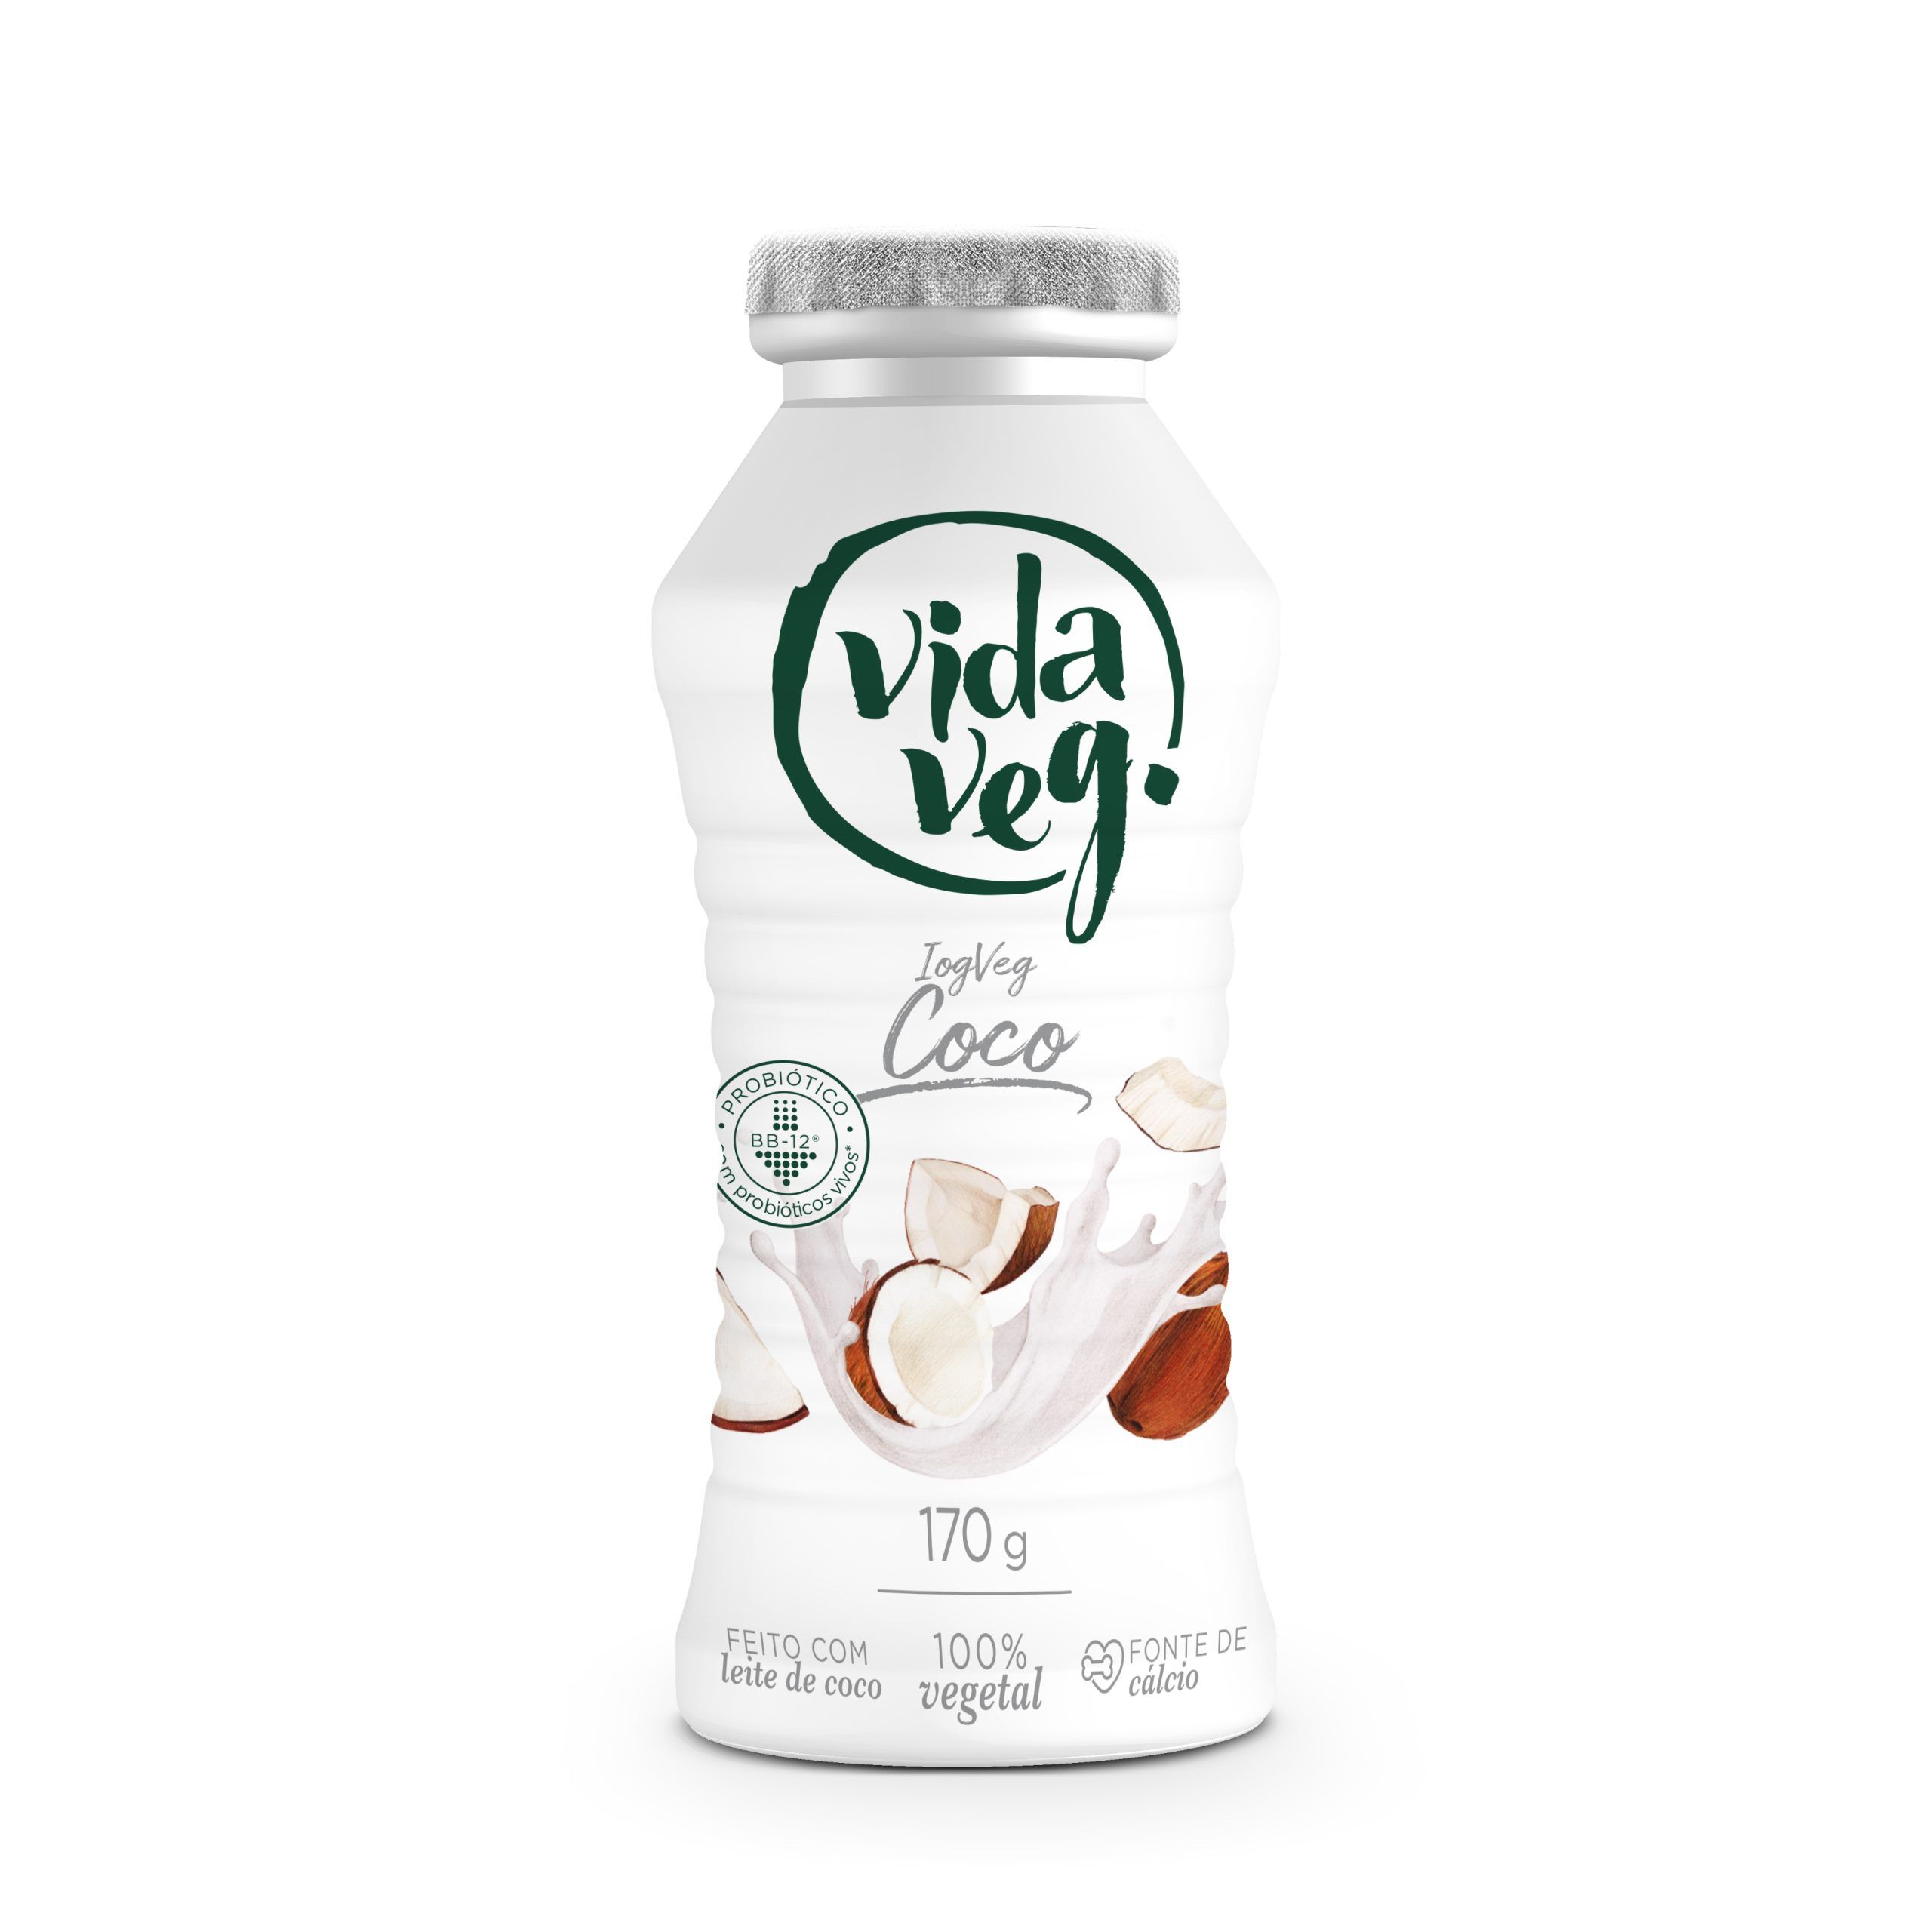 Iogurte de Coco Vegano Vida Veg – 170g